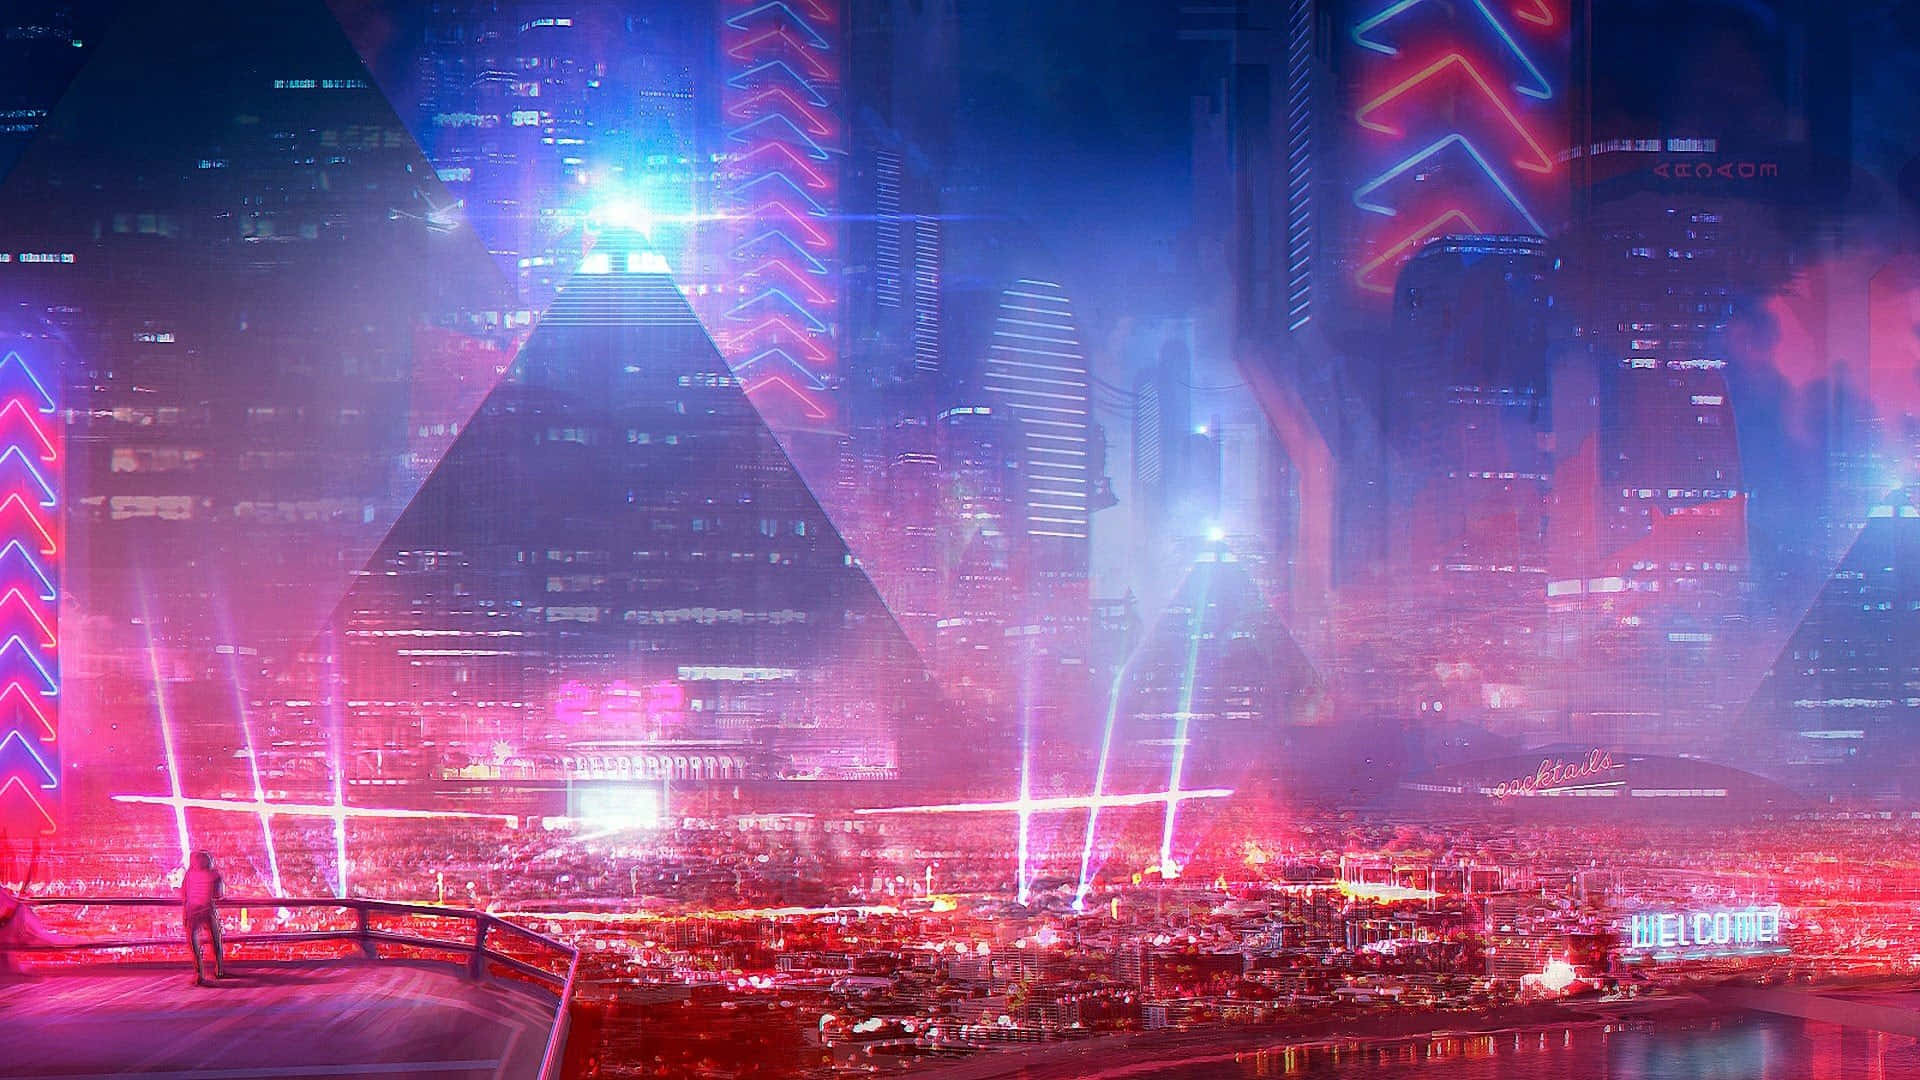 Erkundedie Cyberpunk-stadt Und Ihre Von Neonlichtern Beleuchtete Futuristische Skyline.